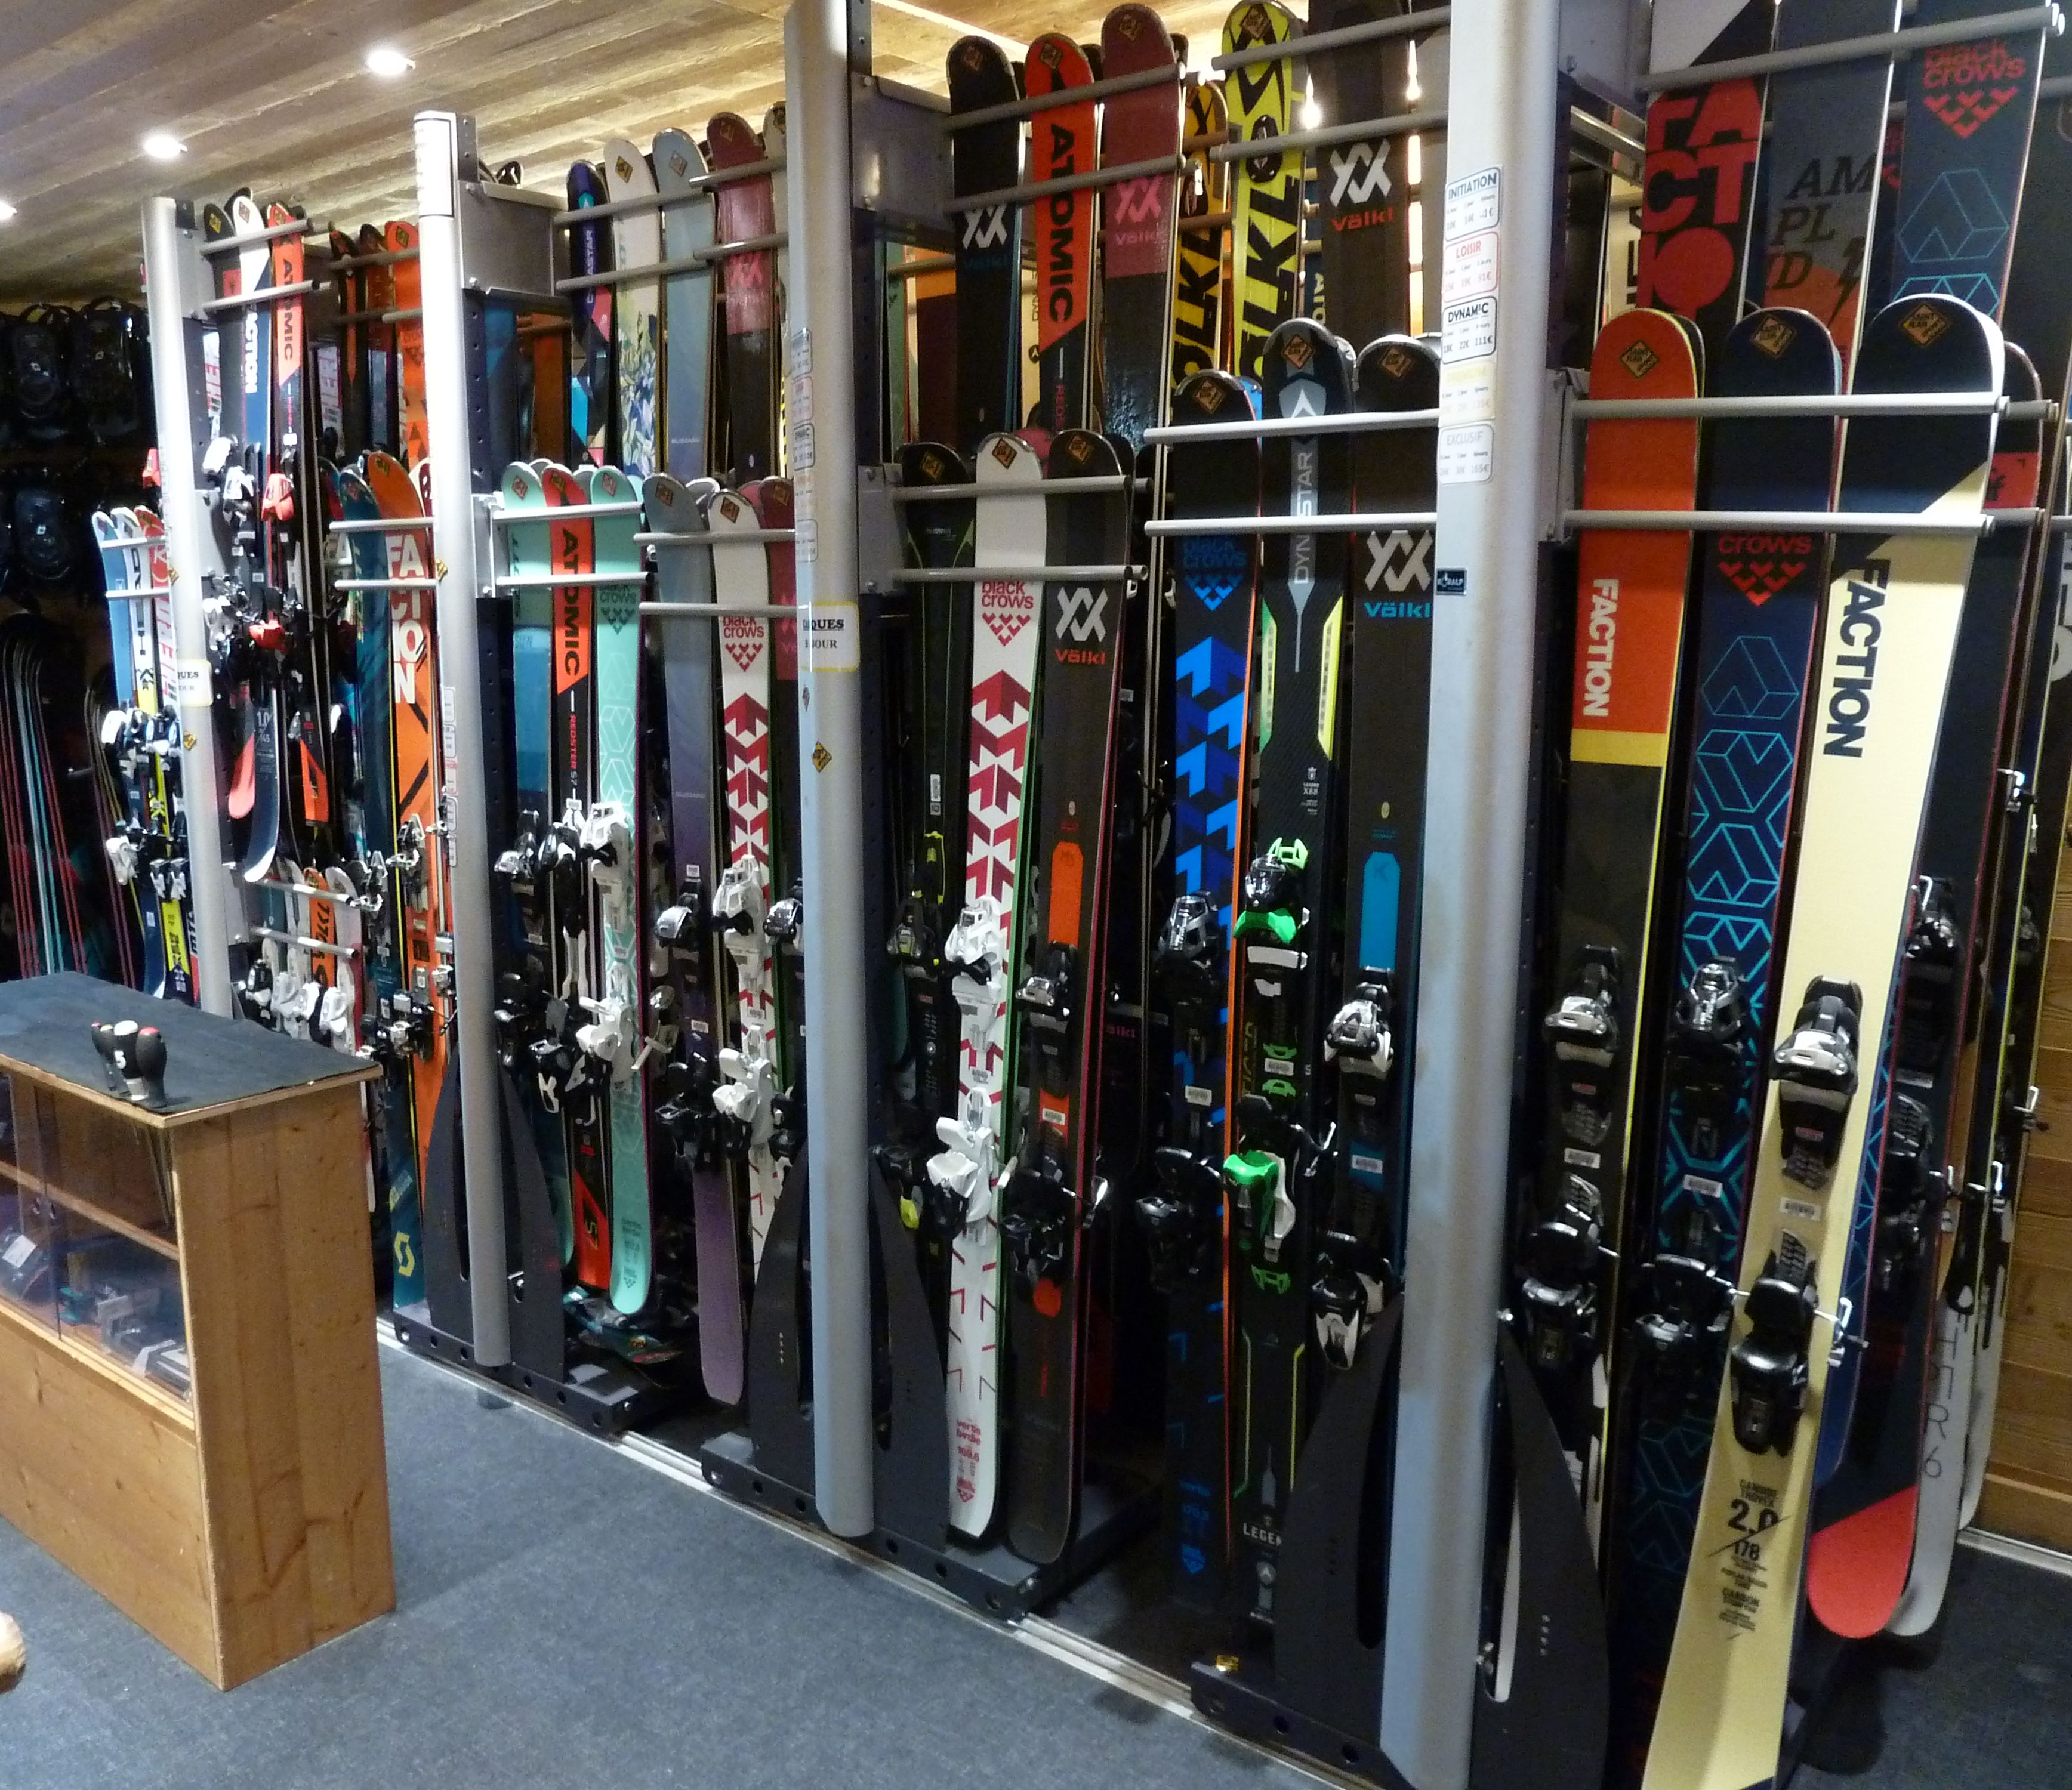 Location de matériel de ski - Alikats